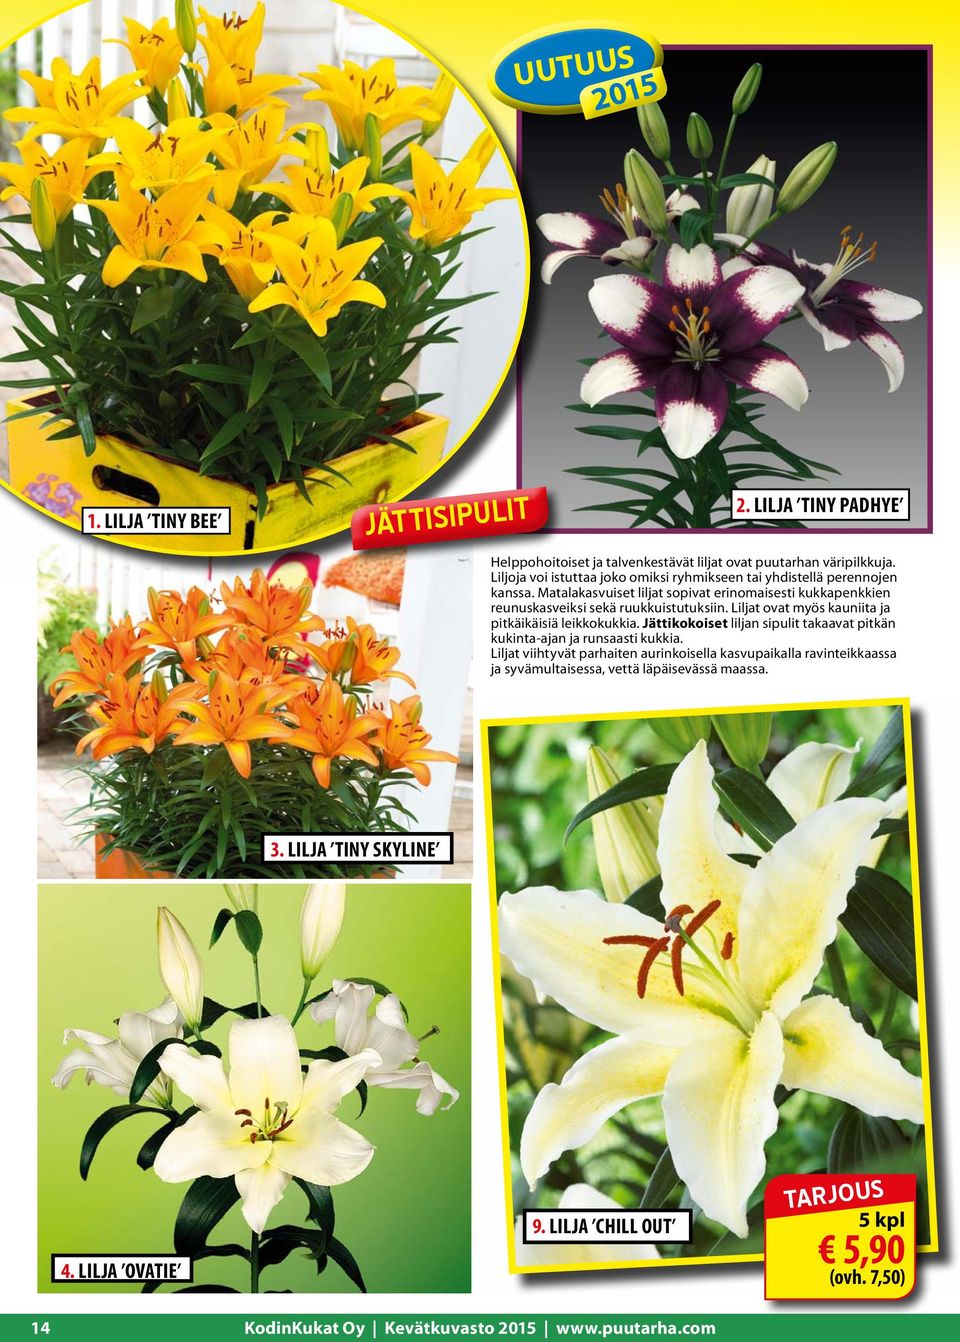 Matalakasvuiset liljat sopivat erinomaisesti kukkapenkkien reunuskasveiksi sekä ruukkuistutuksiin. Liljat ovat myös kauniita ja pitkäikäisiä leikkokukkia.